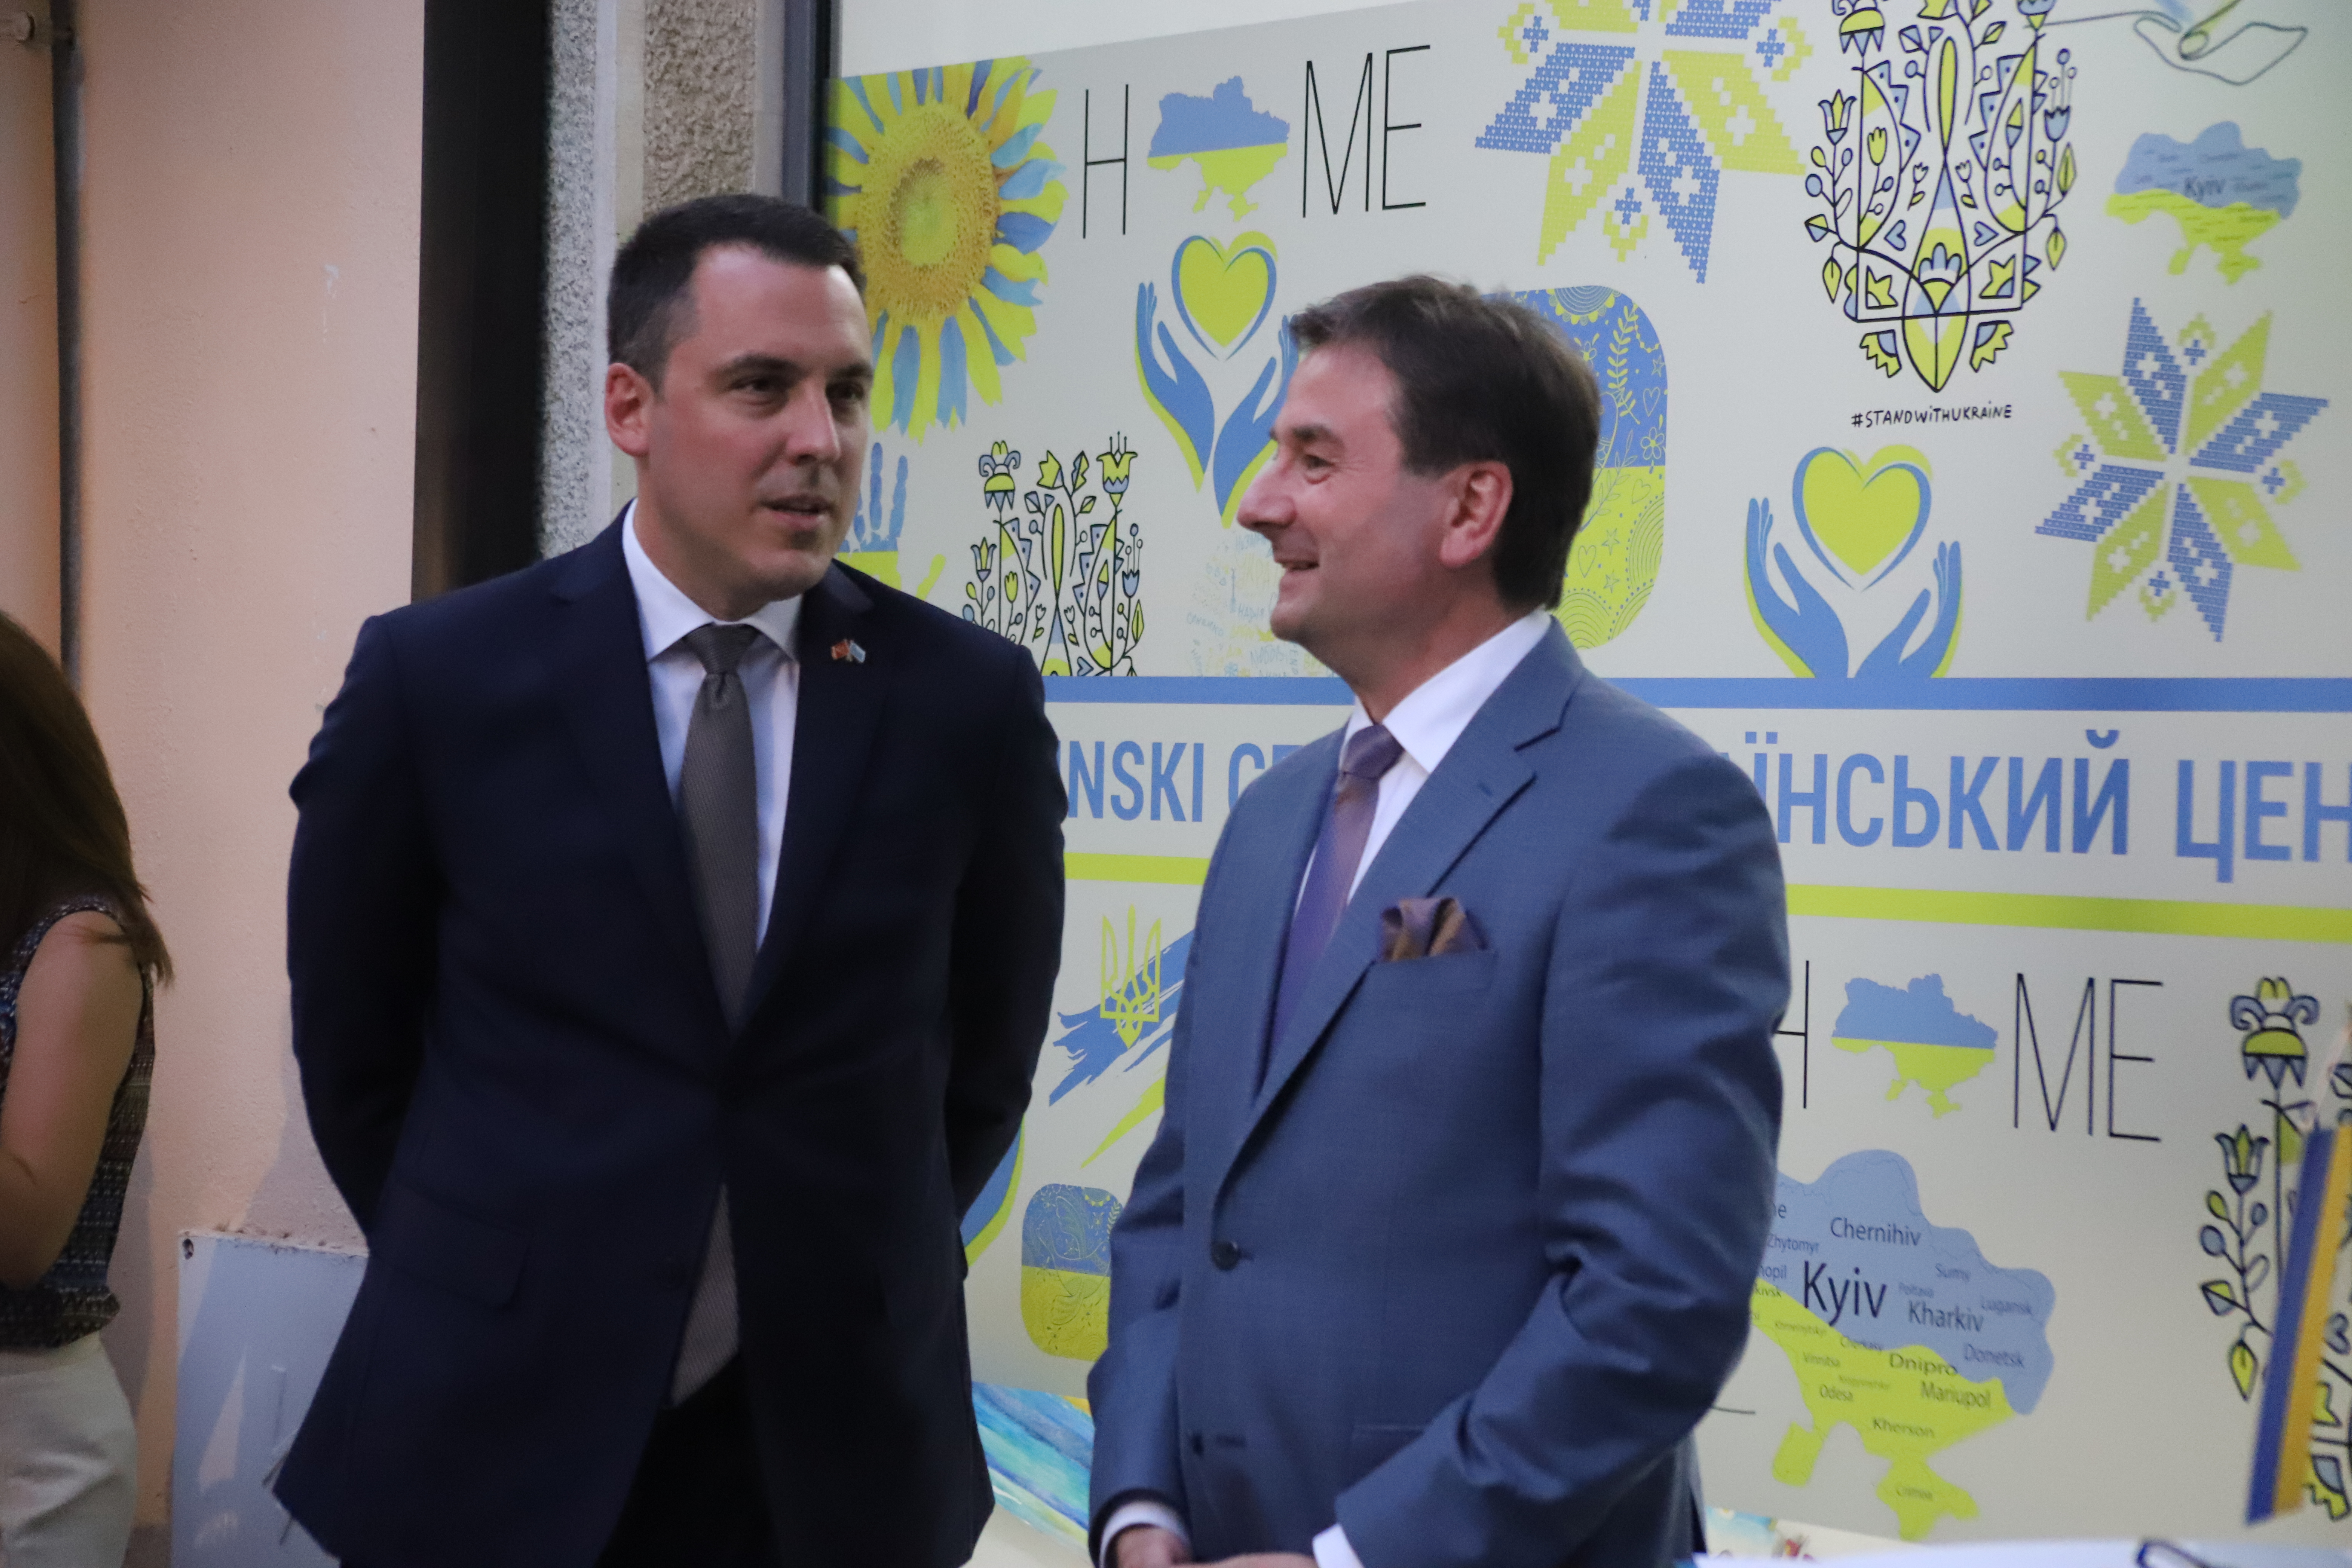 Vuković se sastao sa novoimenovanim ambasadorom Herasimenkom; Podgorica i u dobrim i u lošim vremenima prijatelj Ukrajine